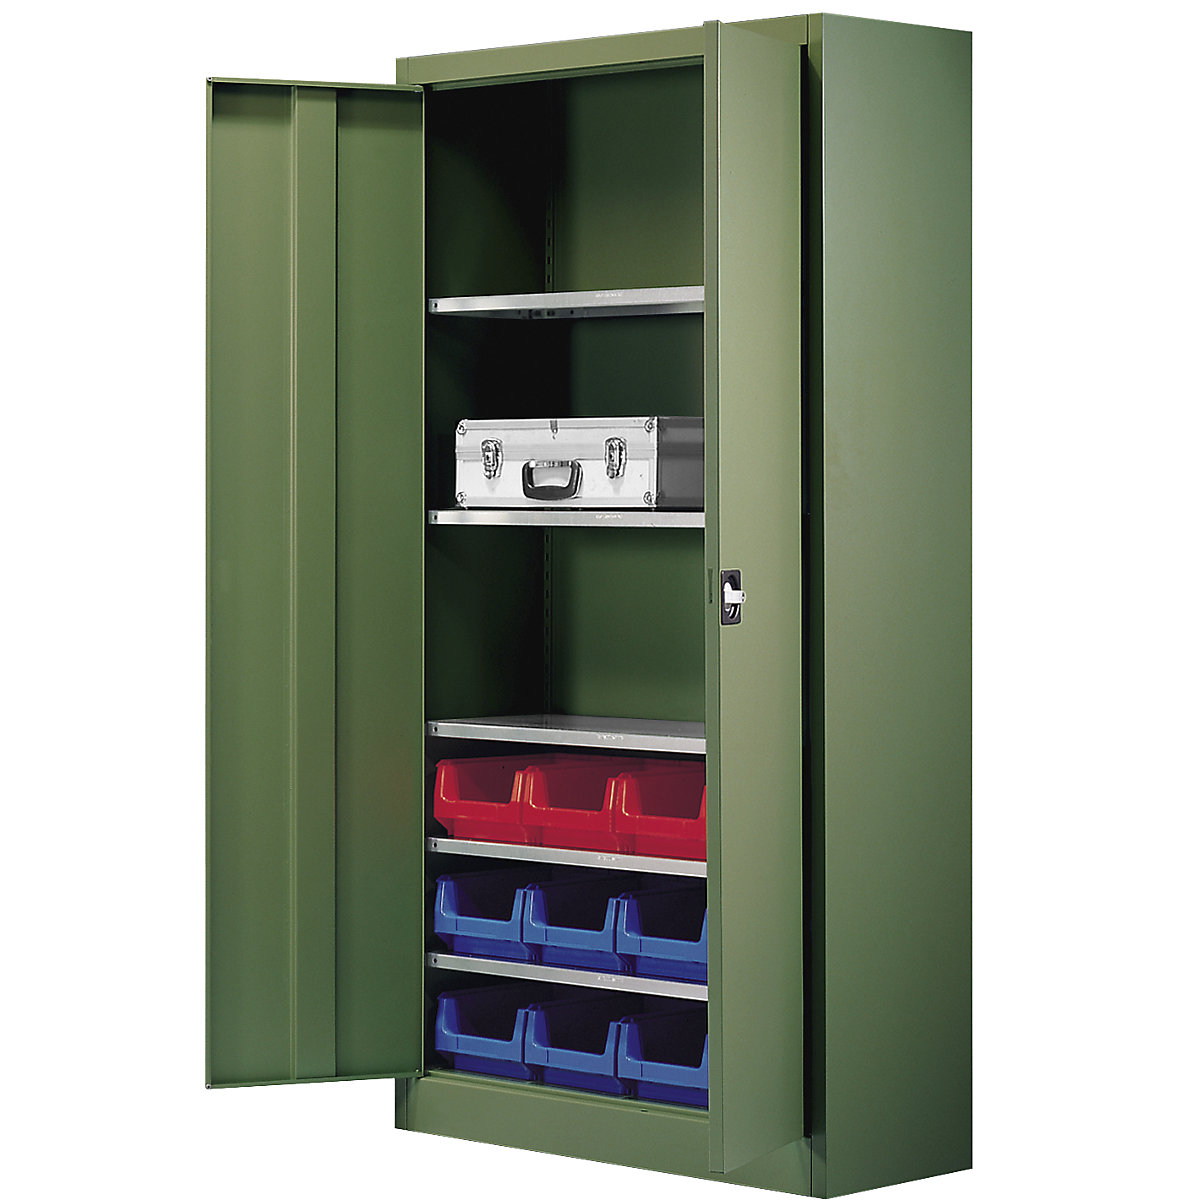 Skladiščna omara, enobarvna – mauser, z 12 odprtimi skladiščnimi posodami, 5 polic, zelena-3